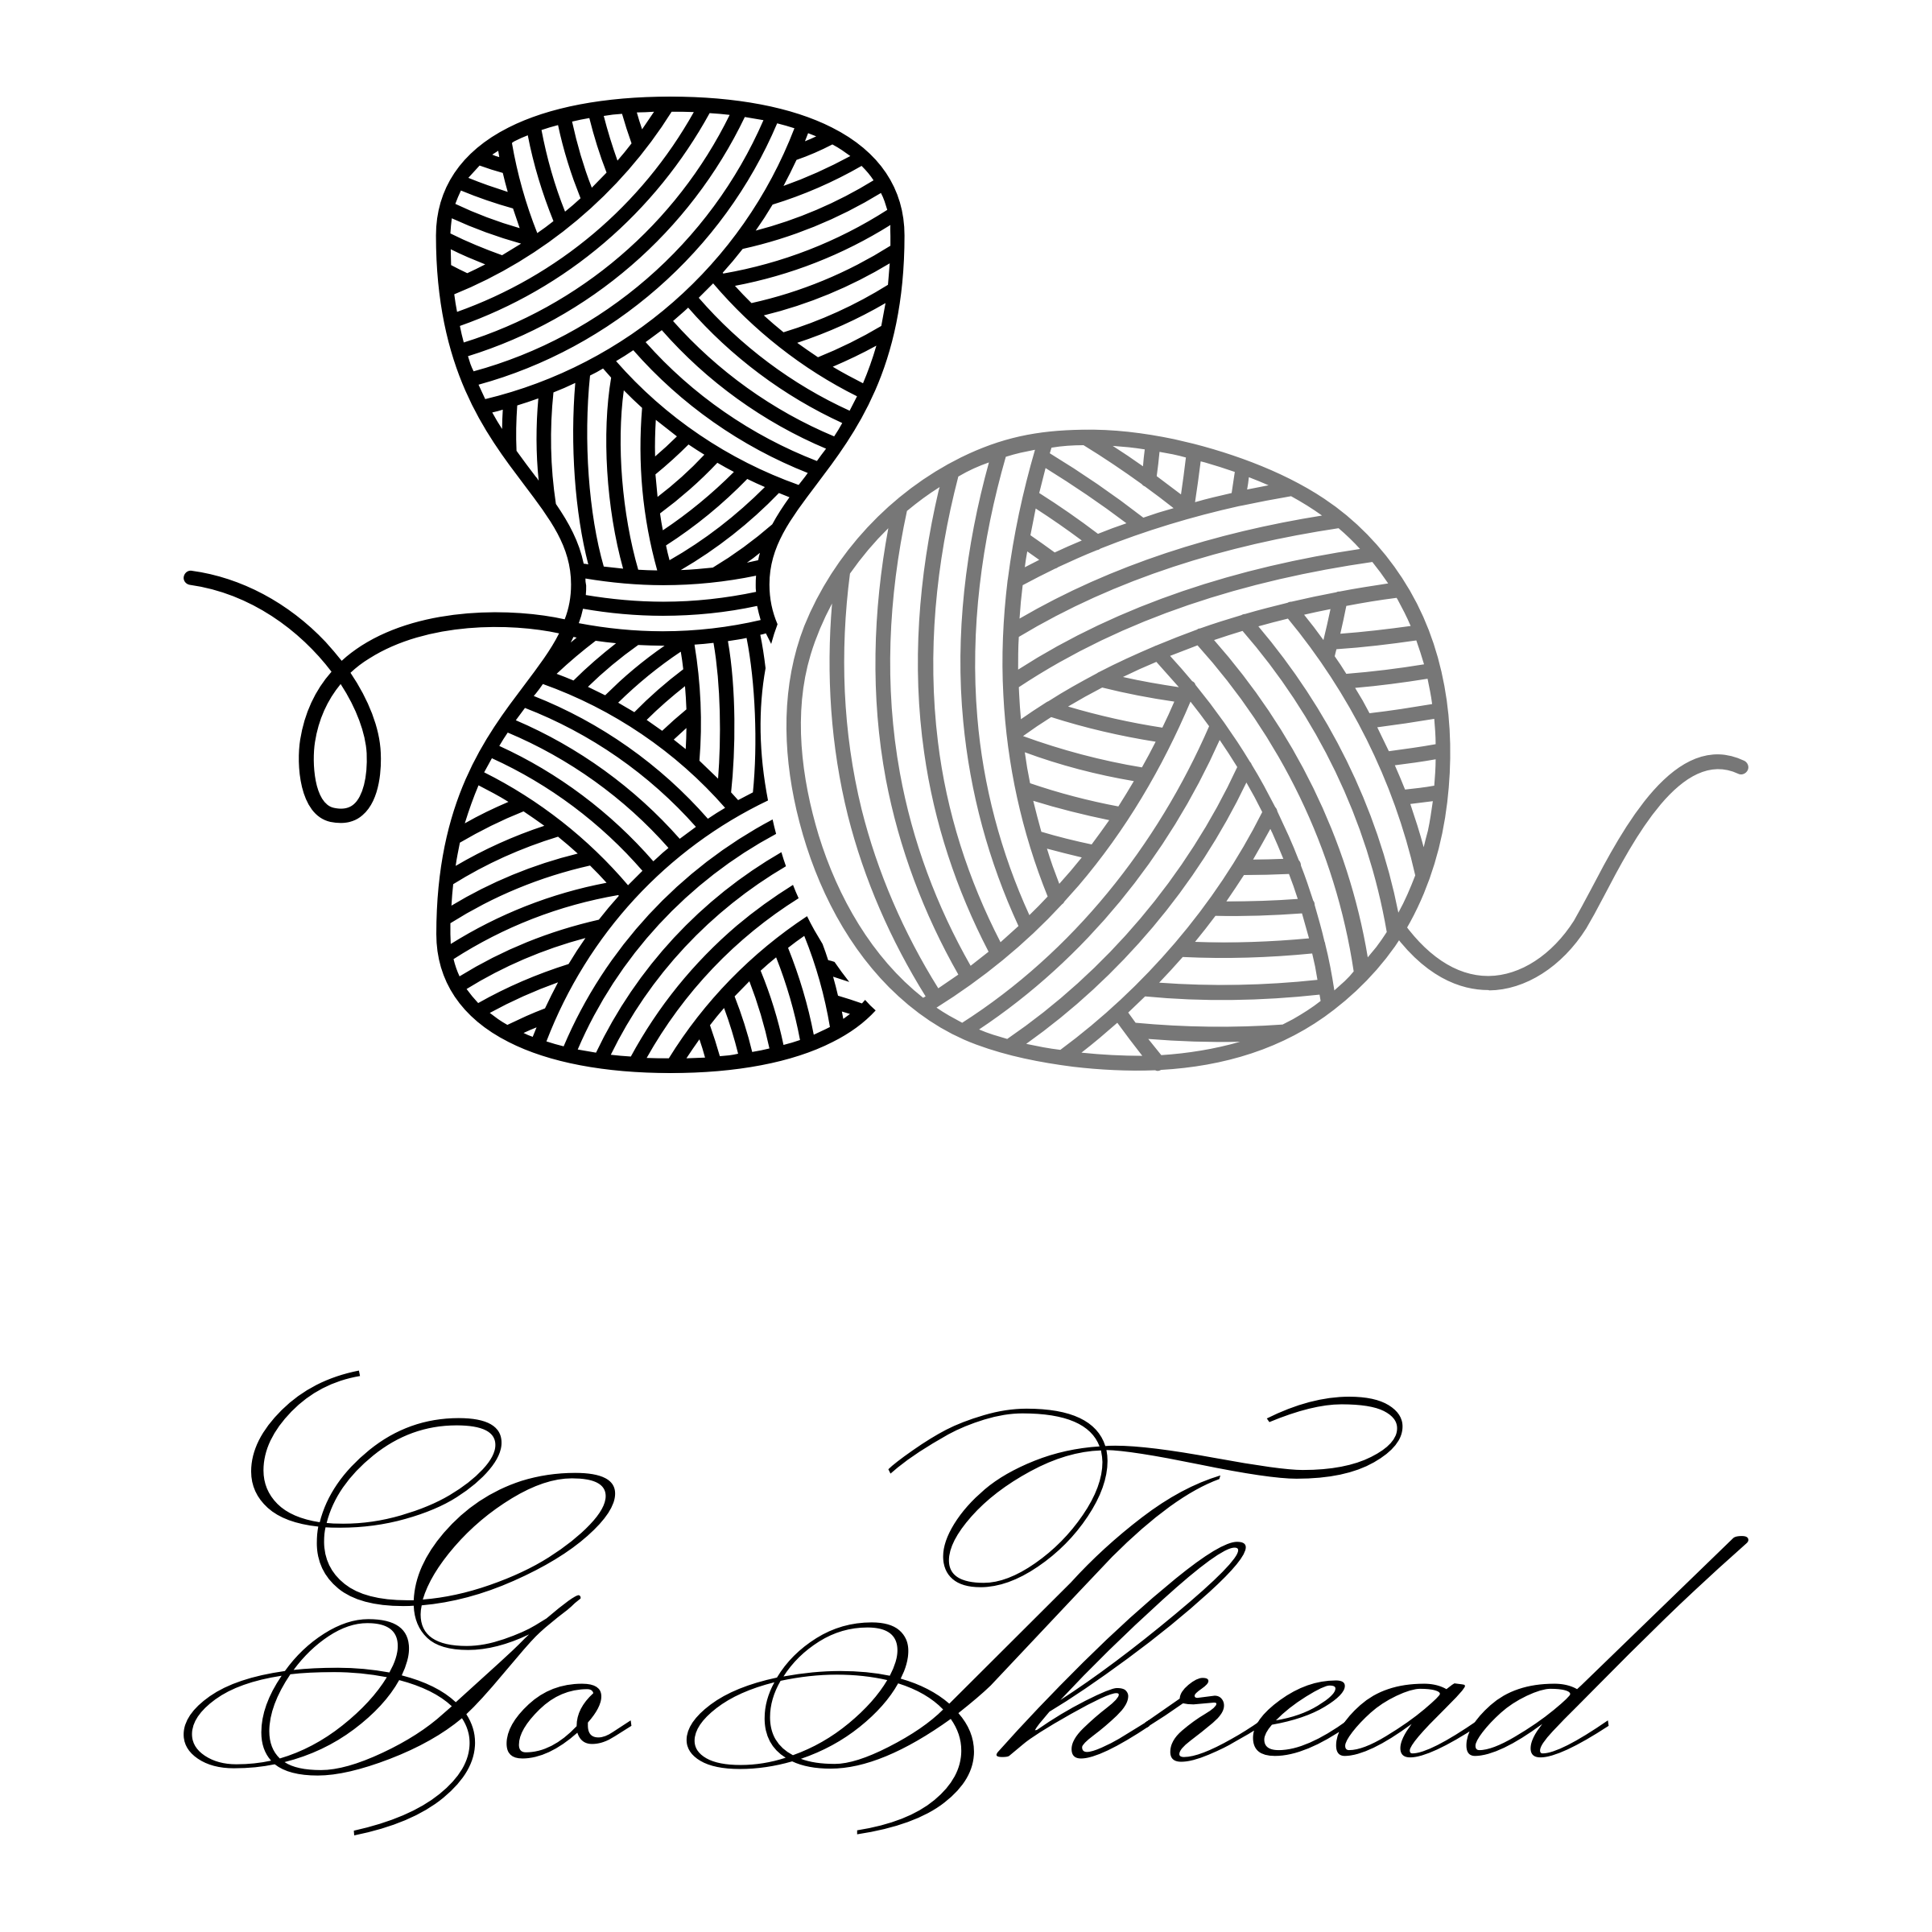 crochet logo maker